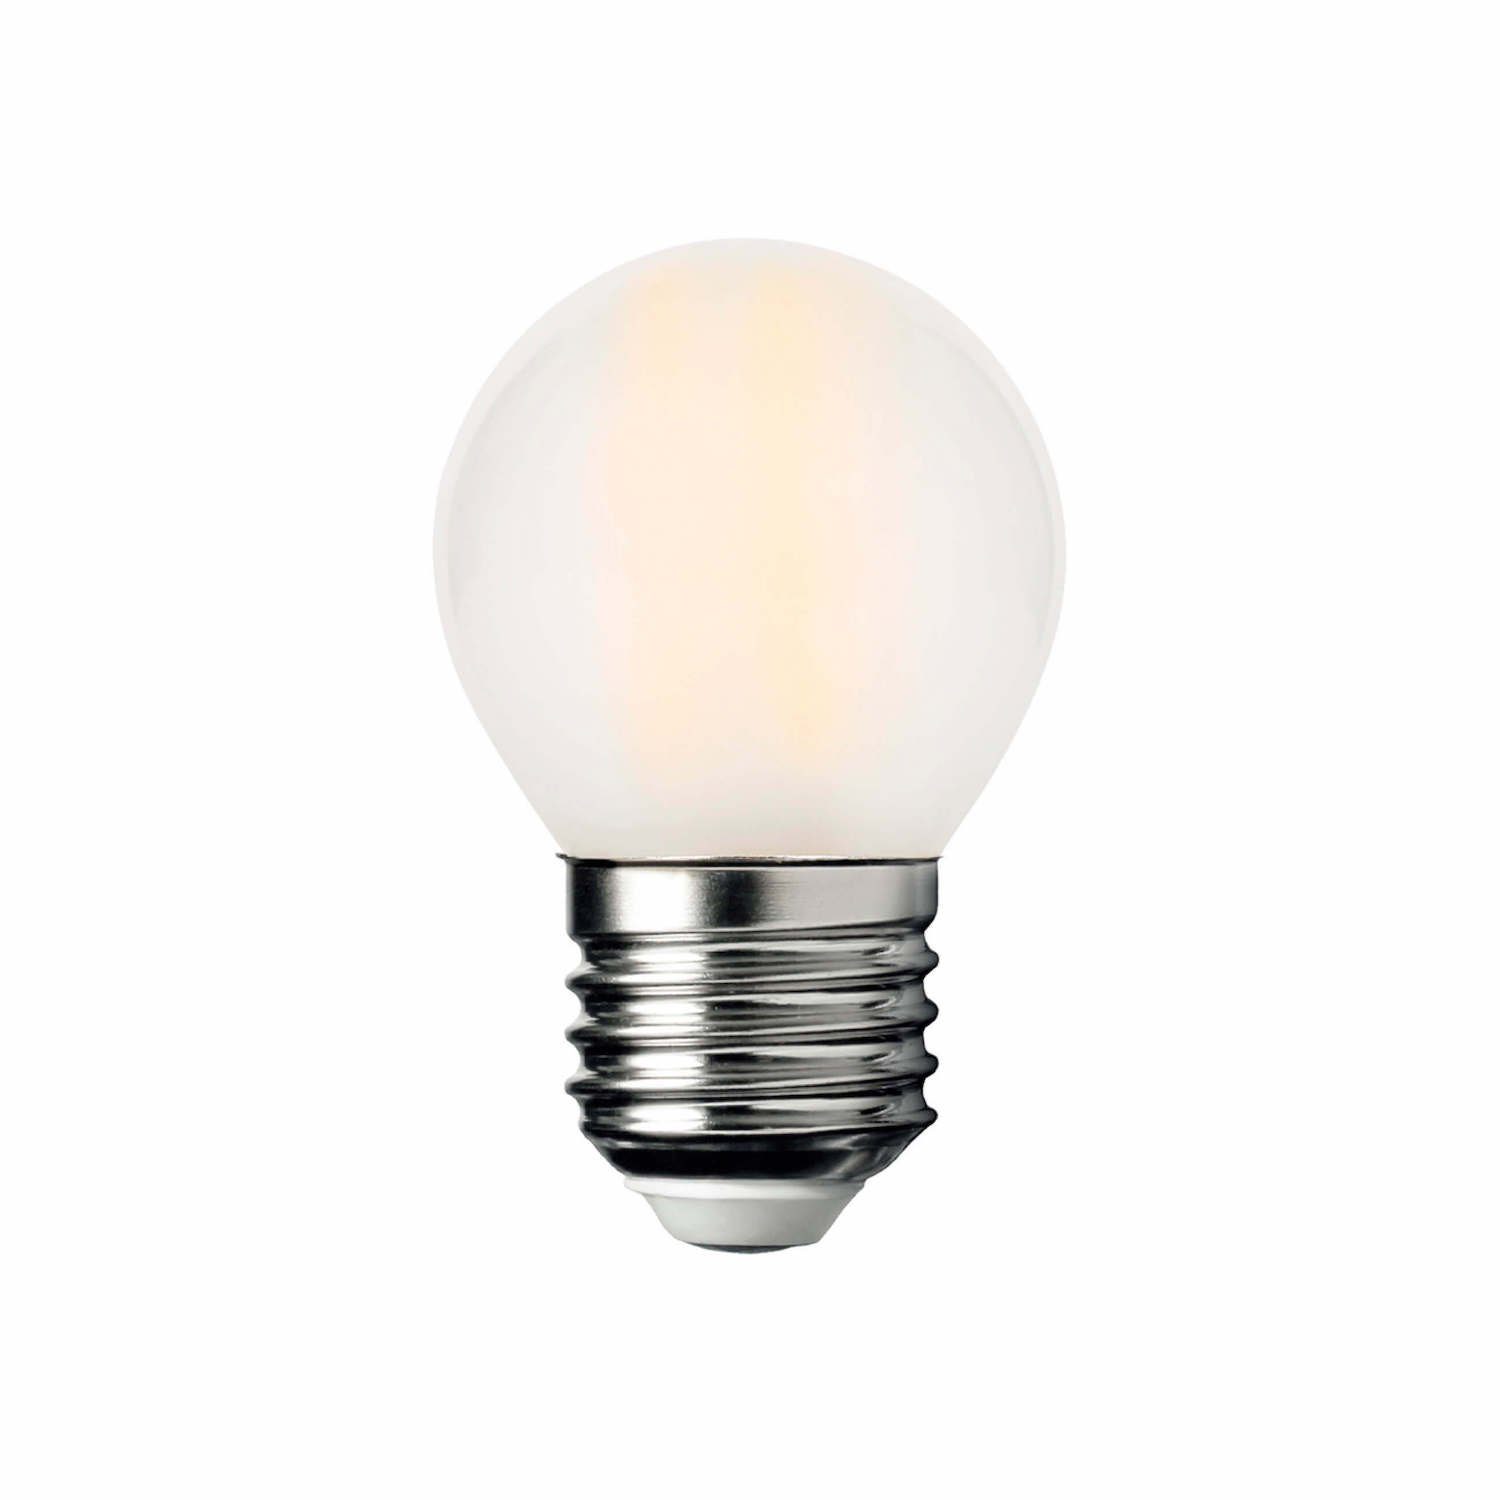 mokebo »Der Globus« LED-Leuchtmittel, E27, Warmweiß, auch als E27 LED-Lampe,  LED Leuchtmittel oder LED-Birne in Warmweiß oder getönt online kaufen | OTTO